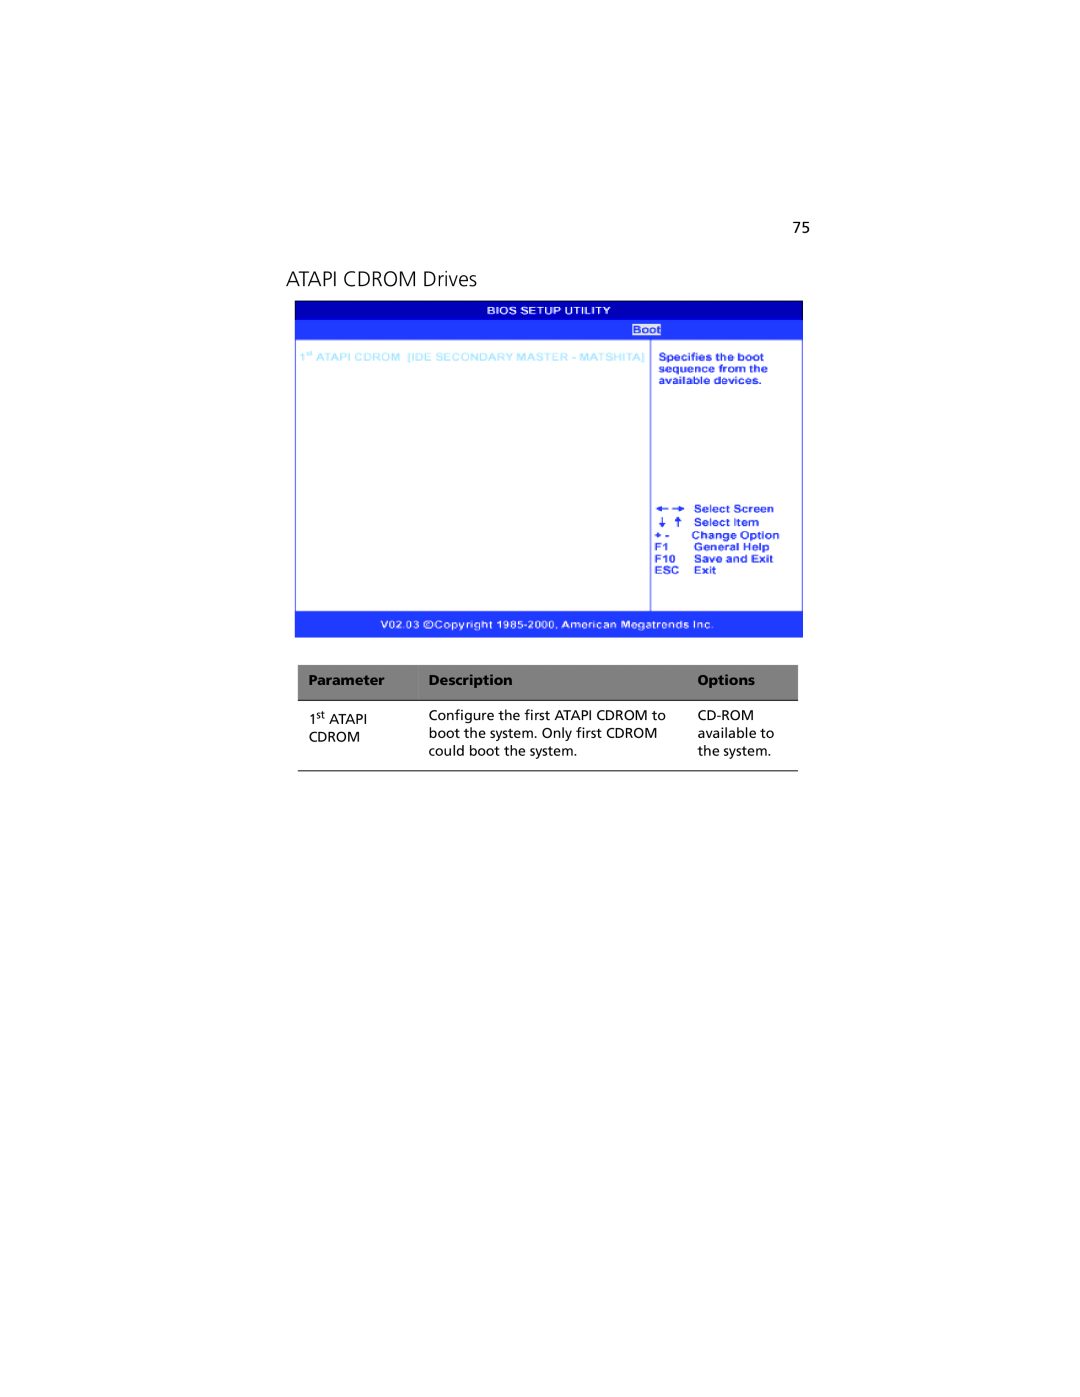 Acer G301 manual ATAPI CDROM Drives, Parameter, Description, Options 